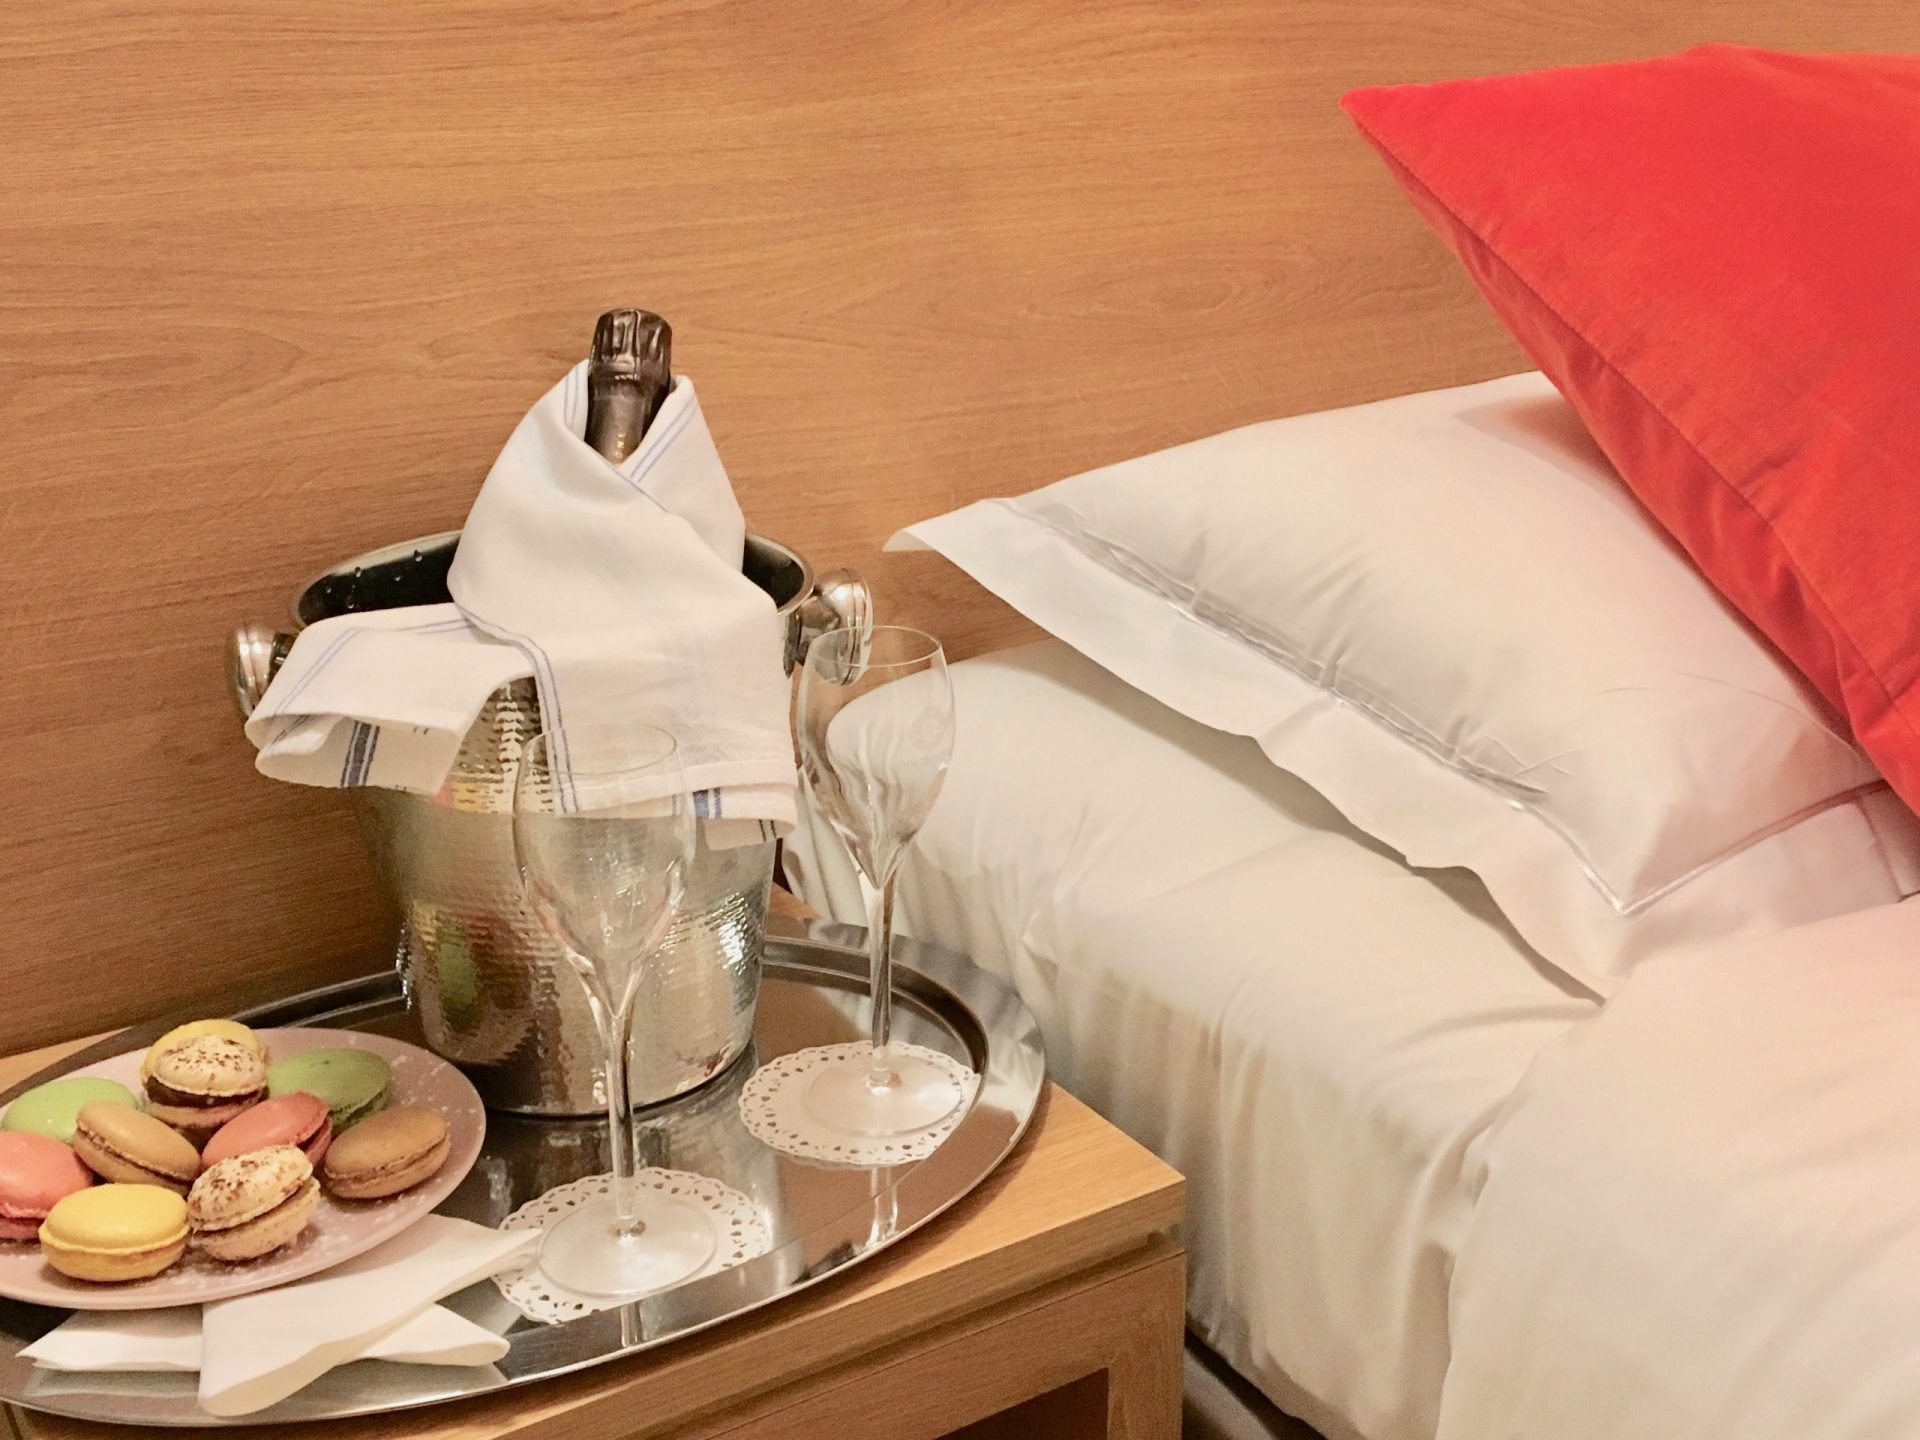 Hôtel Outre-Mer (Villa Le Couchant) - Room service Suite Promenade sur les planches de Deauville